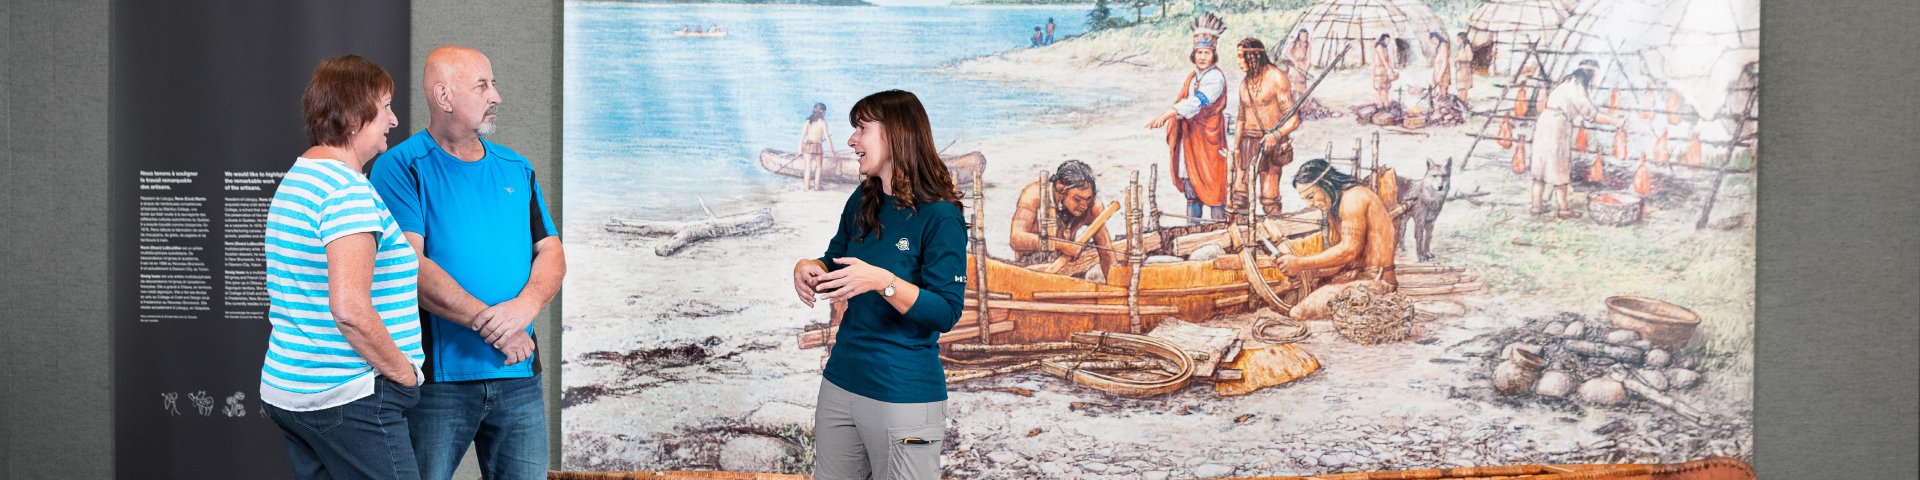 Deux visiteurs et une employée devant une fresque représentant une scène traditionnelle autochtone.